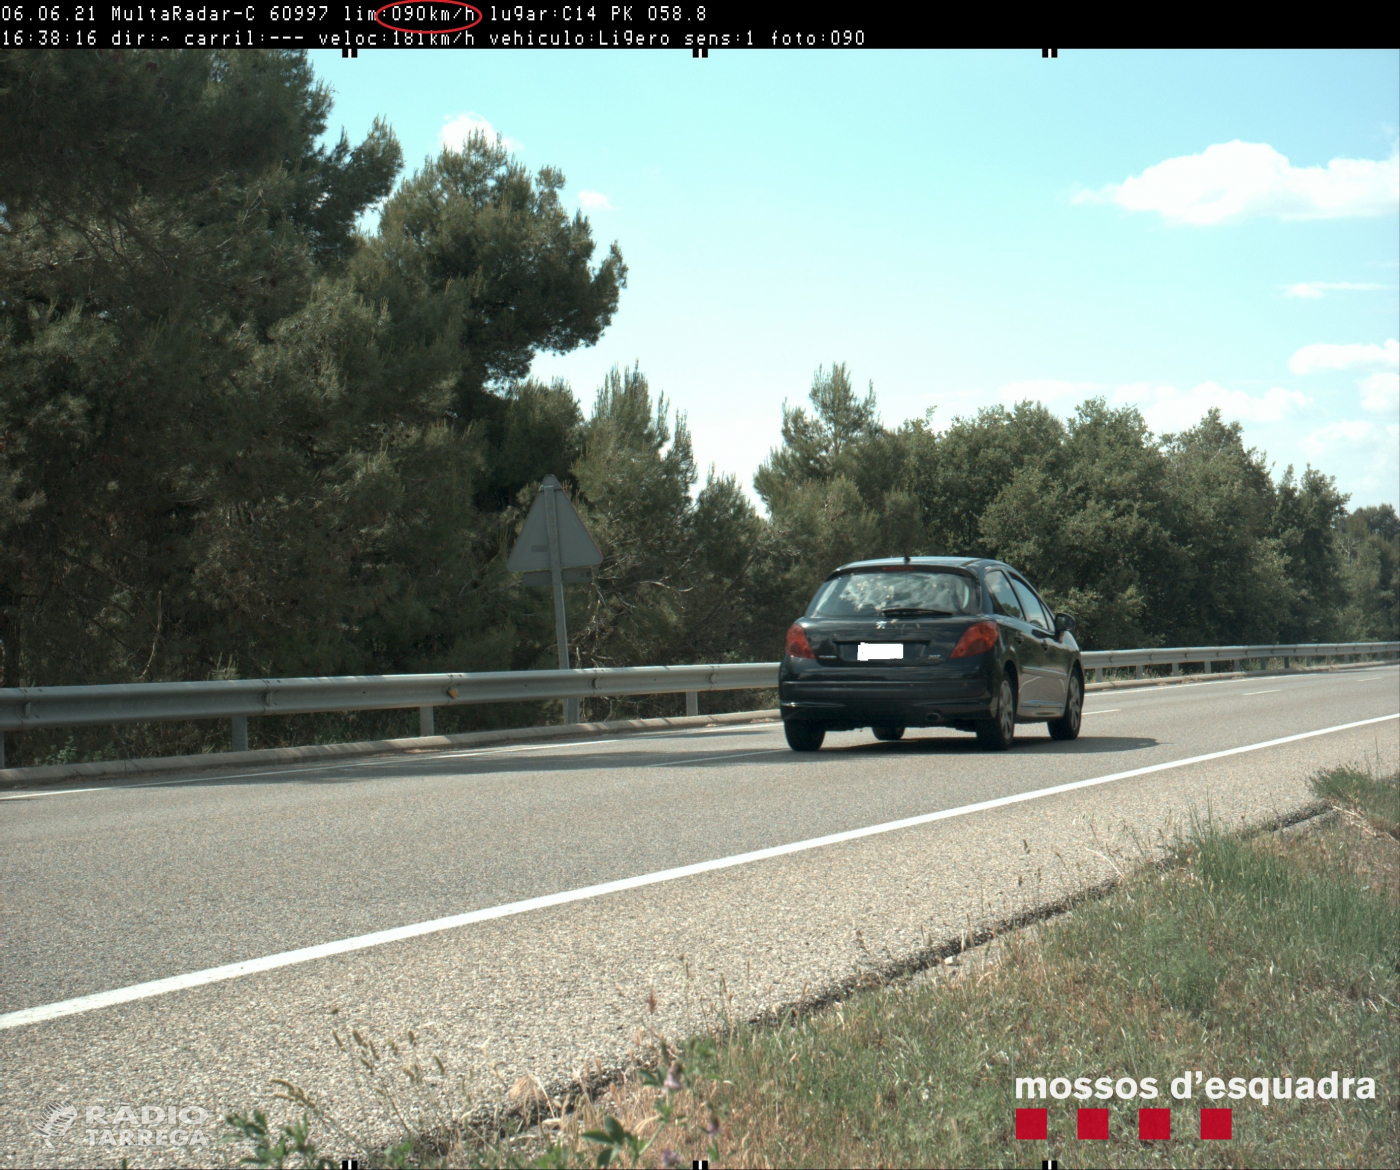 Els Mossos d’Esquadra denuncien penalment un conductor que circulava a 181 km/h per la  C-14 a  l'Urgell